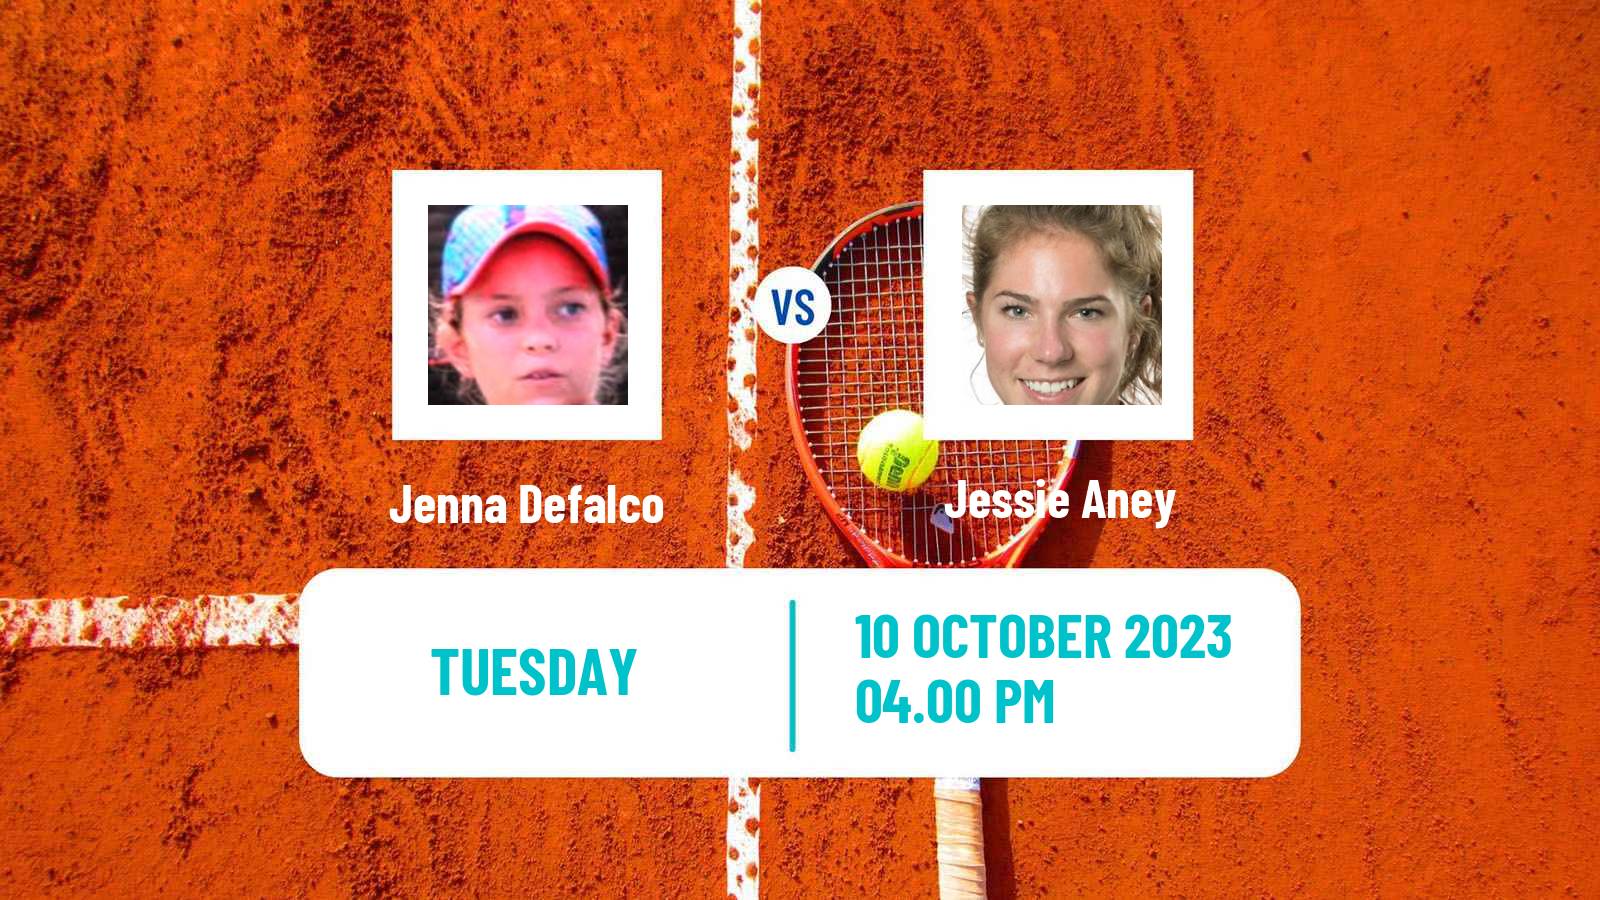 Tennis ITF W60 Rancho Santa Fe Ca Women Jenna Defalco - Jessie Aney